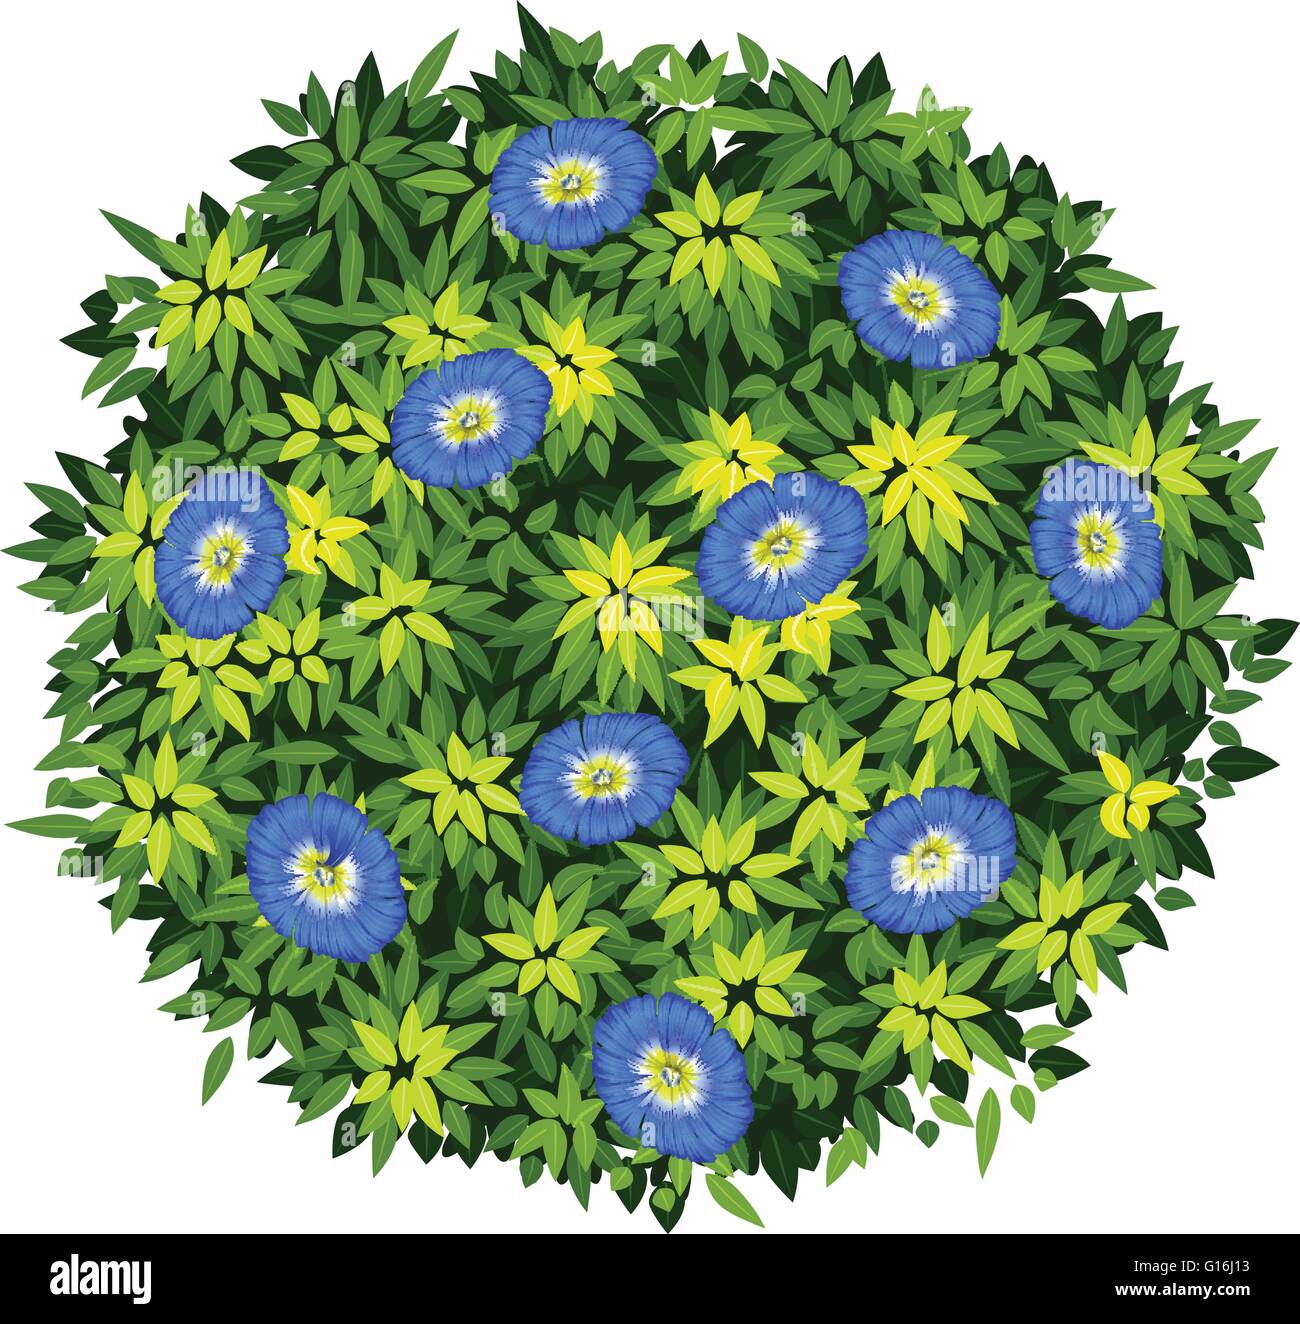 Blue flower on green bush illustration Stock Vector